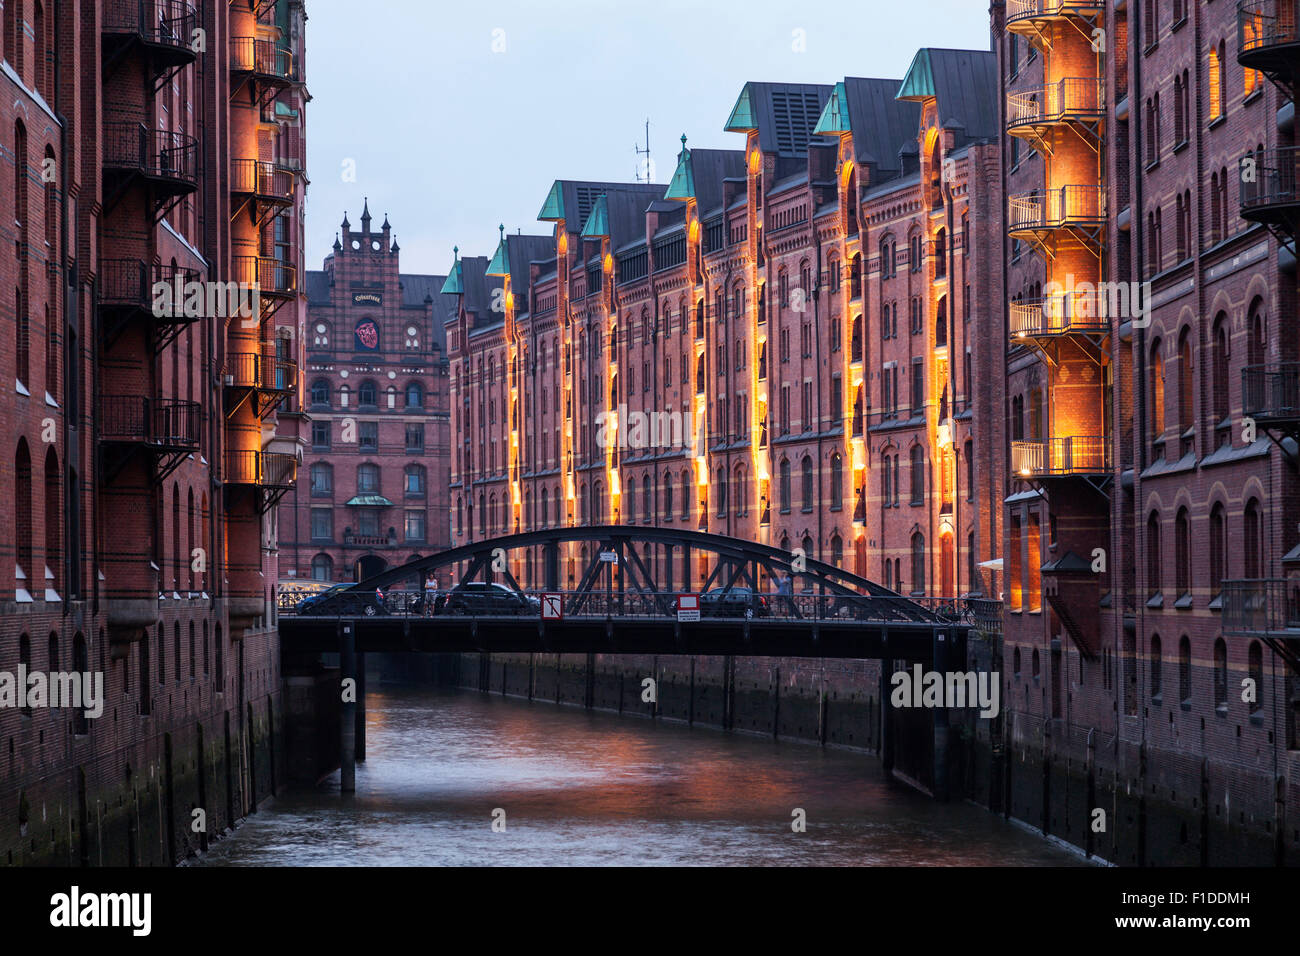 Speicherstadt in Hamburg at dusk Stock Photo